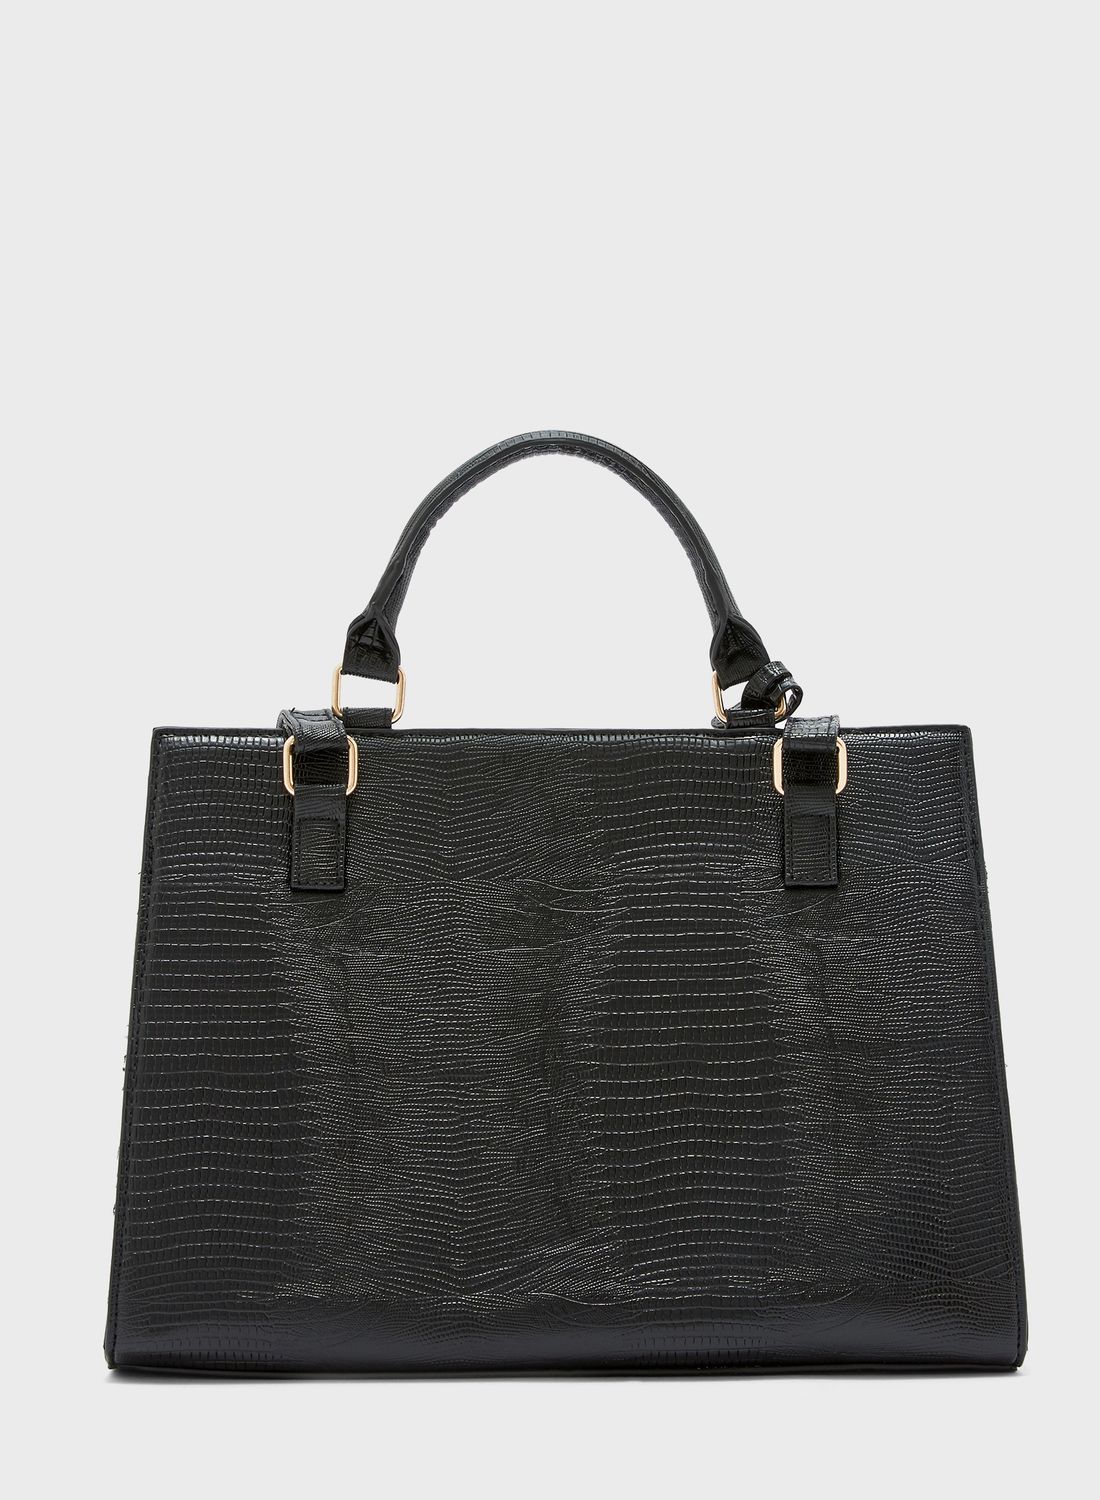 Croc Texture Handbag Black 